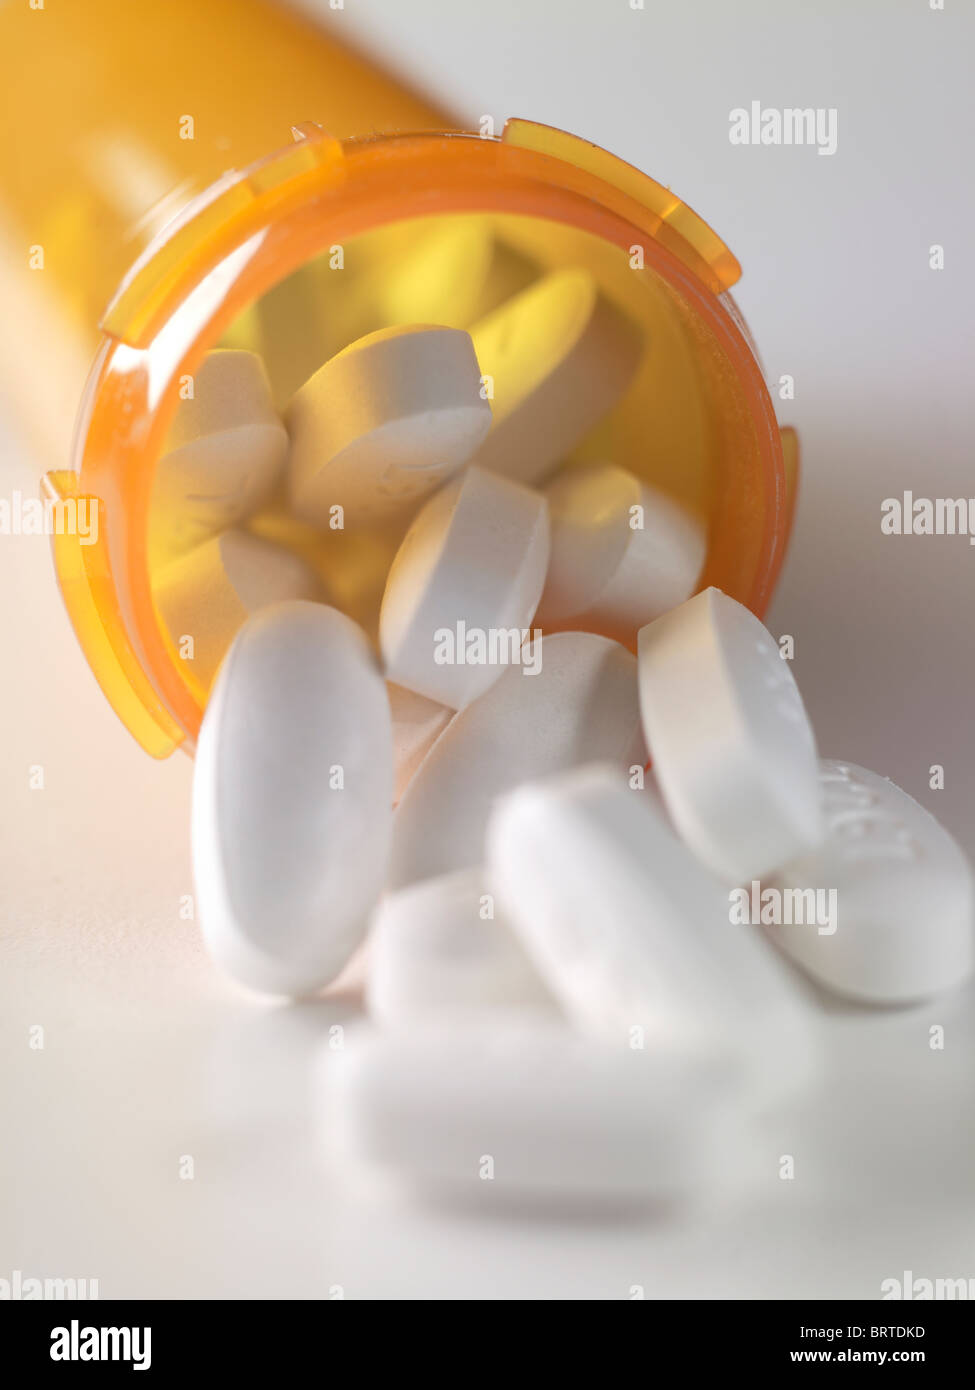 Pilules blanches s'échappant de médicaments de prescription medicine Bottle, USA Banque D'Images